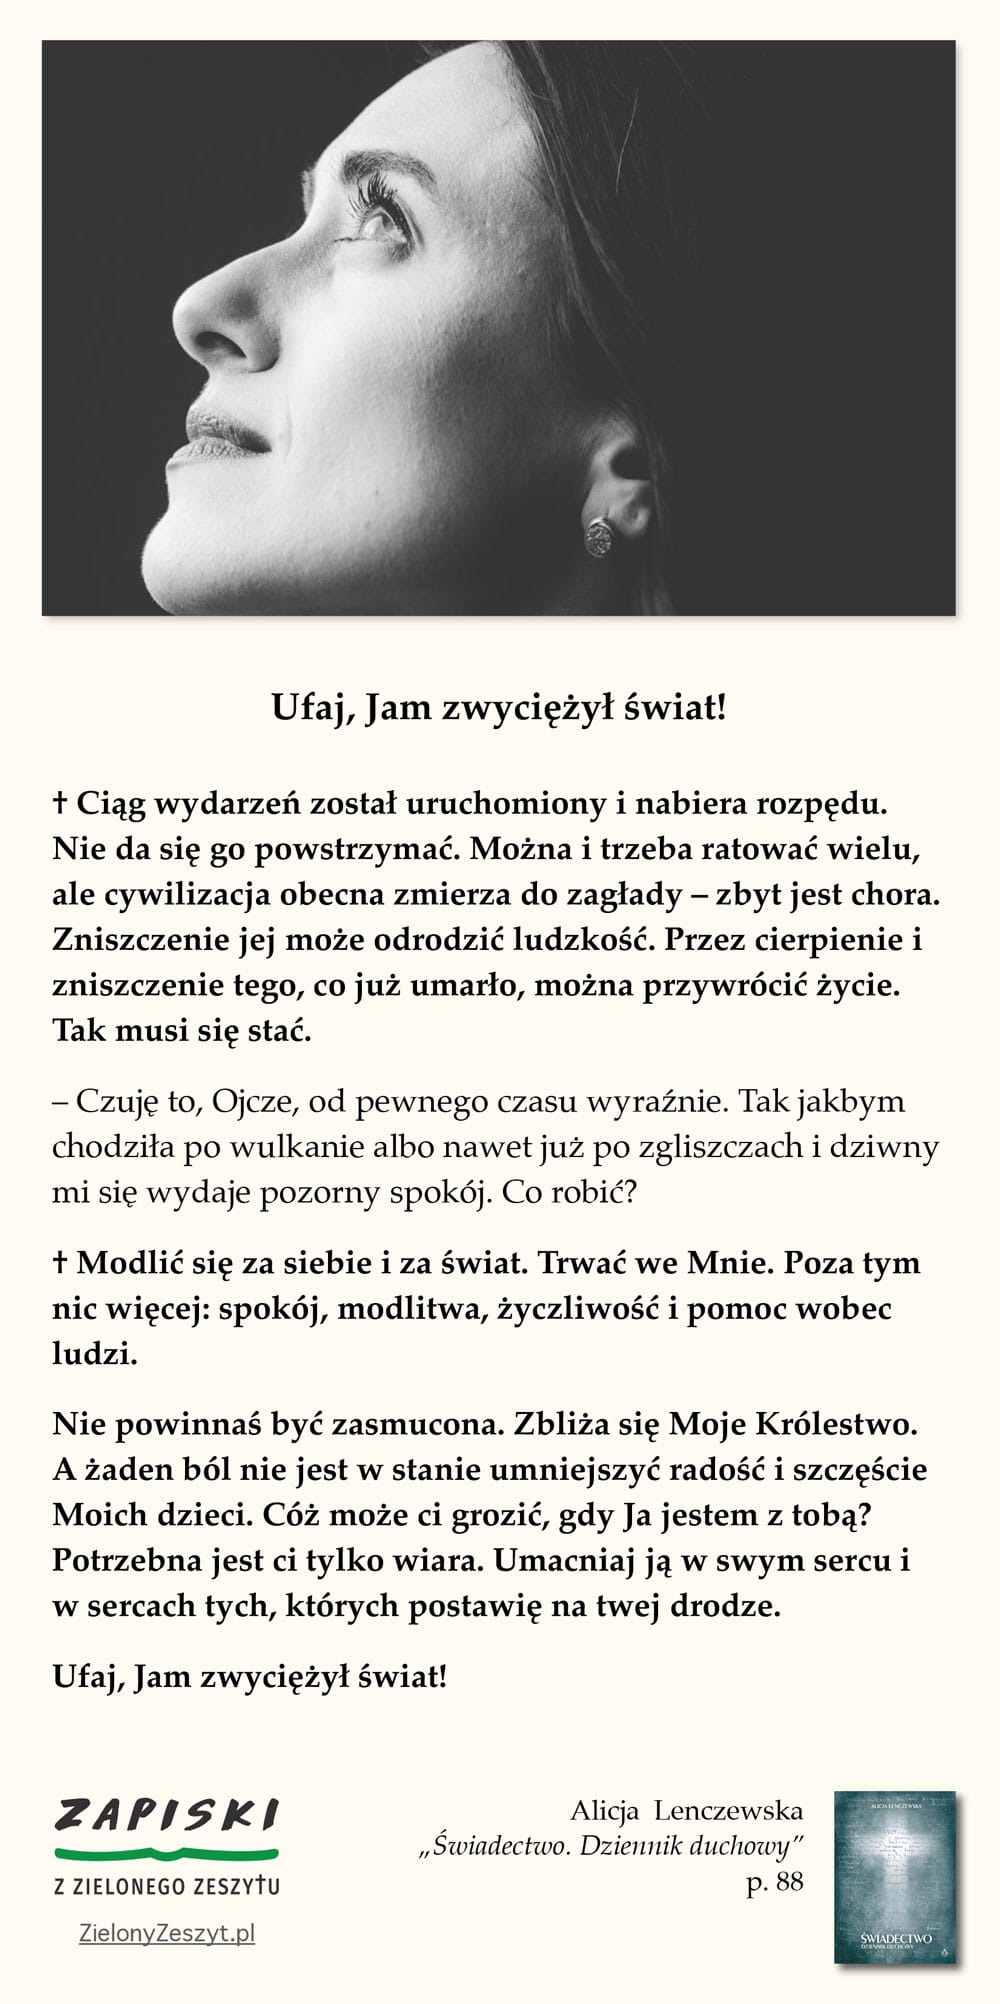 Alicja Lenczewska, „Świadectwo. Dziennik duchowy”, p. 88 (Ufaj, Jam zwyciężył świat!)